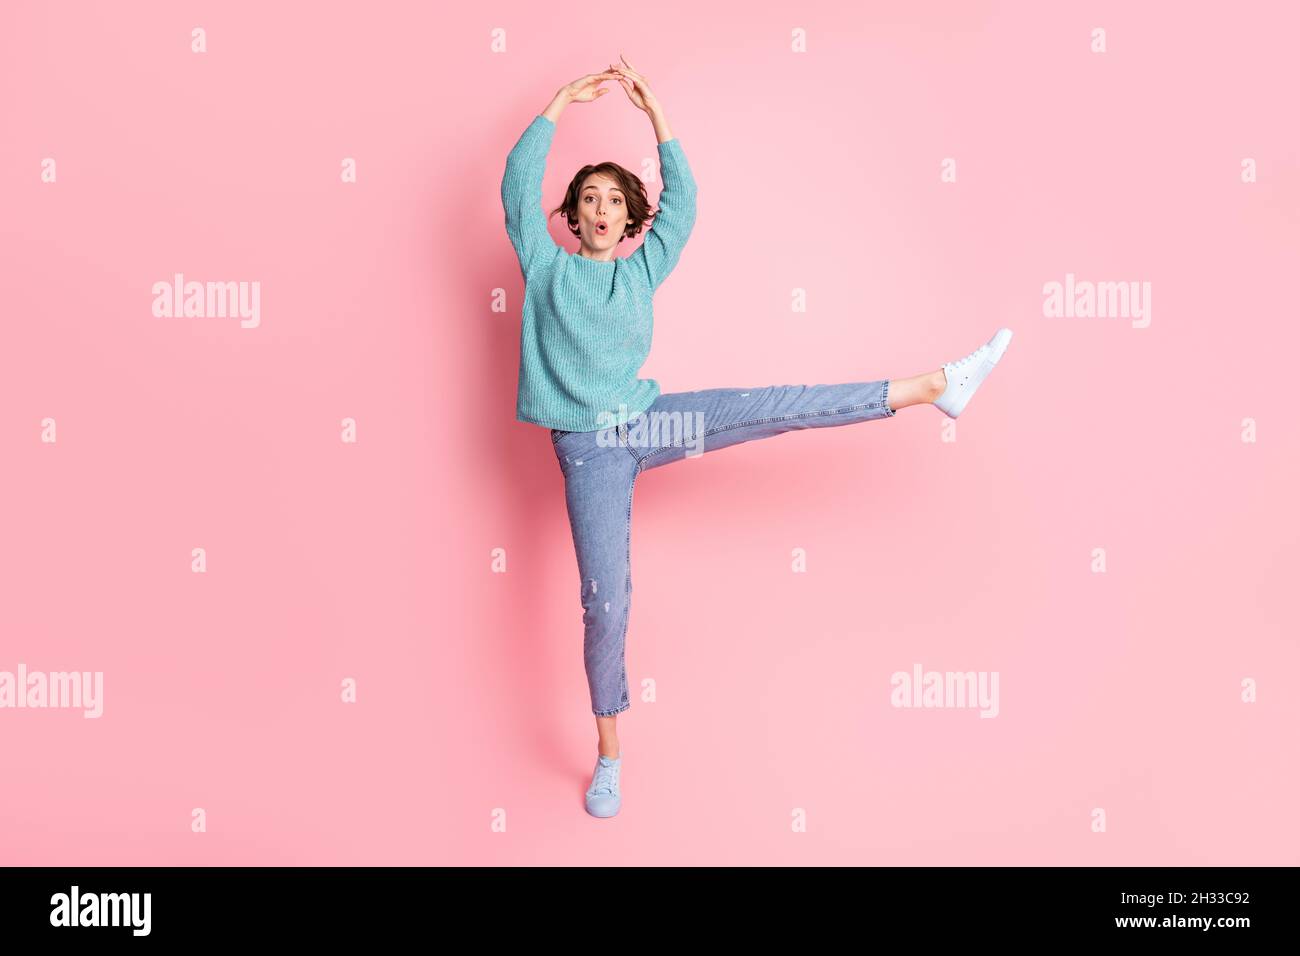 Ganzkörper-Foto von jungen aufgeregt Frau heben Hände Beine Ballett isoliert auf pastellrosa Hintergrund Stockfoto